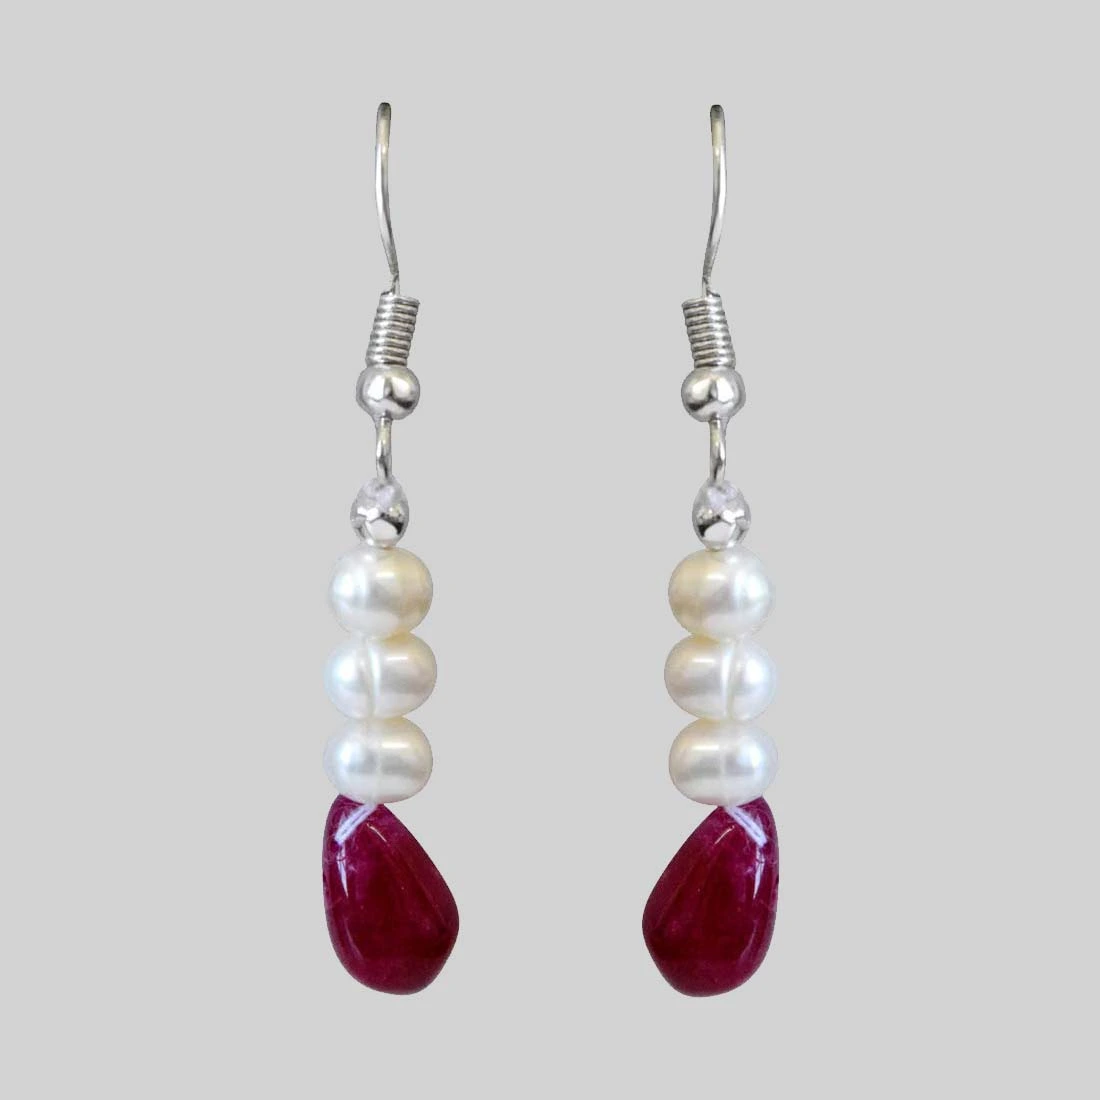 Real Ruby Drop & Freshwater Pearl Earrings for Women (SE345)